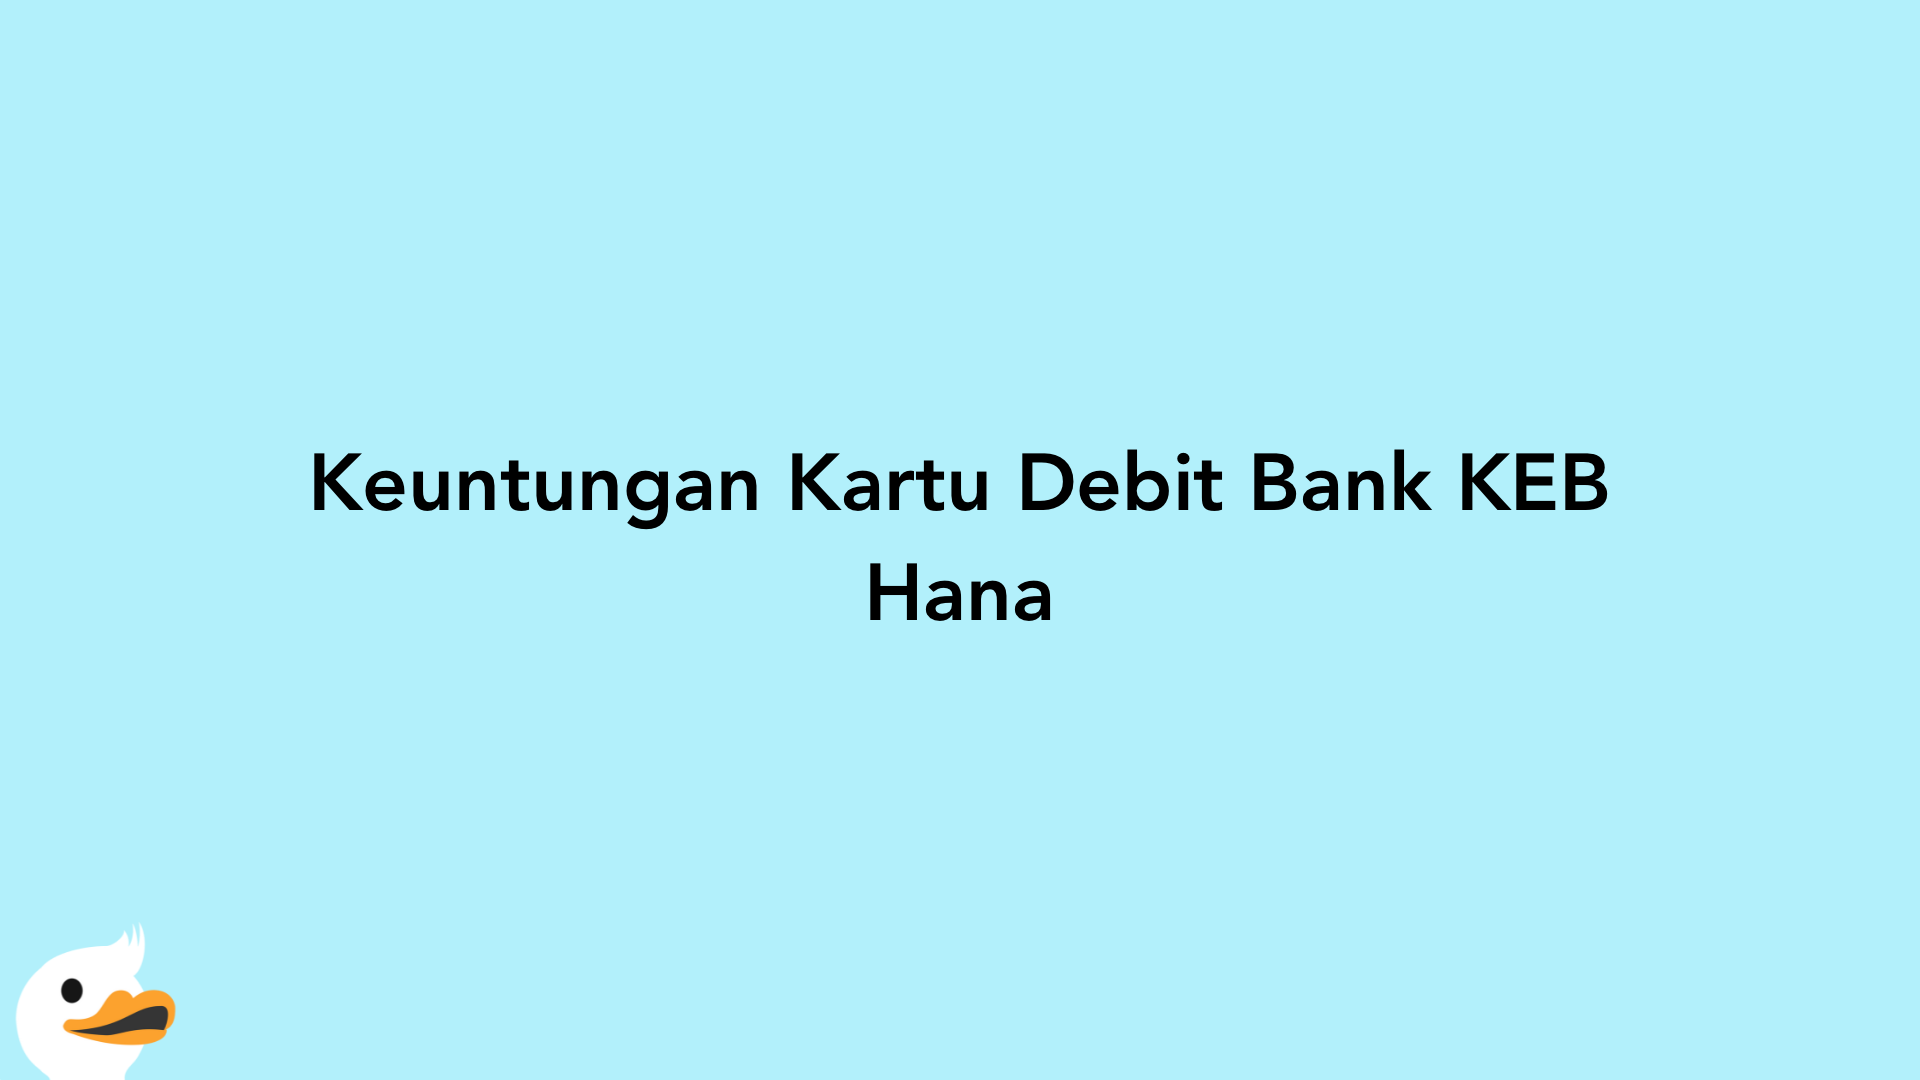 Keuntungan Kartu Debit Bank KEB Hana